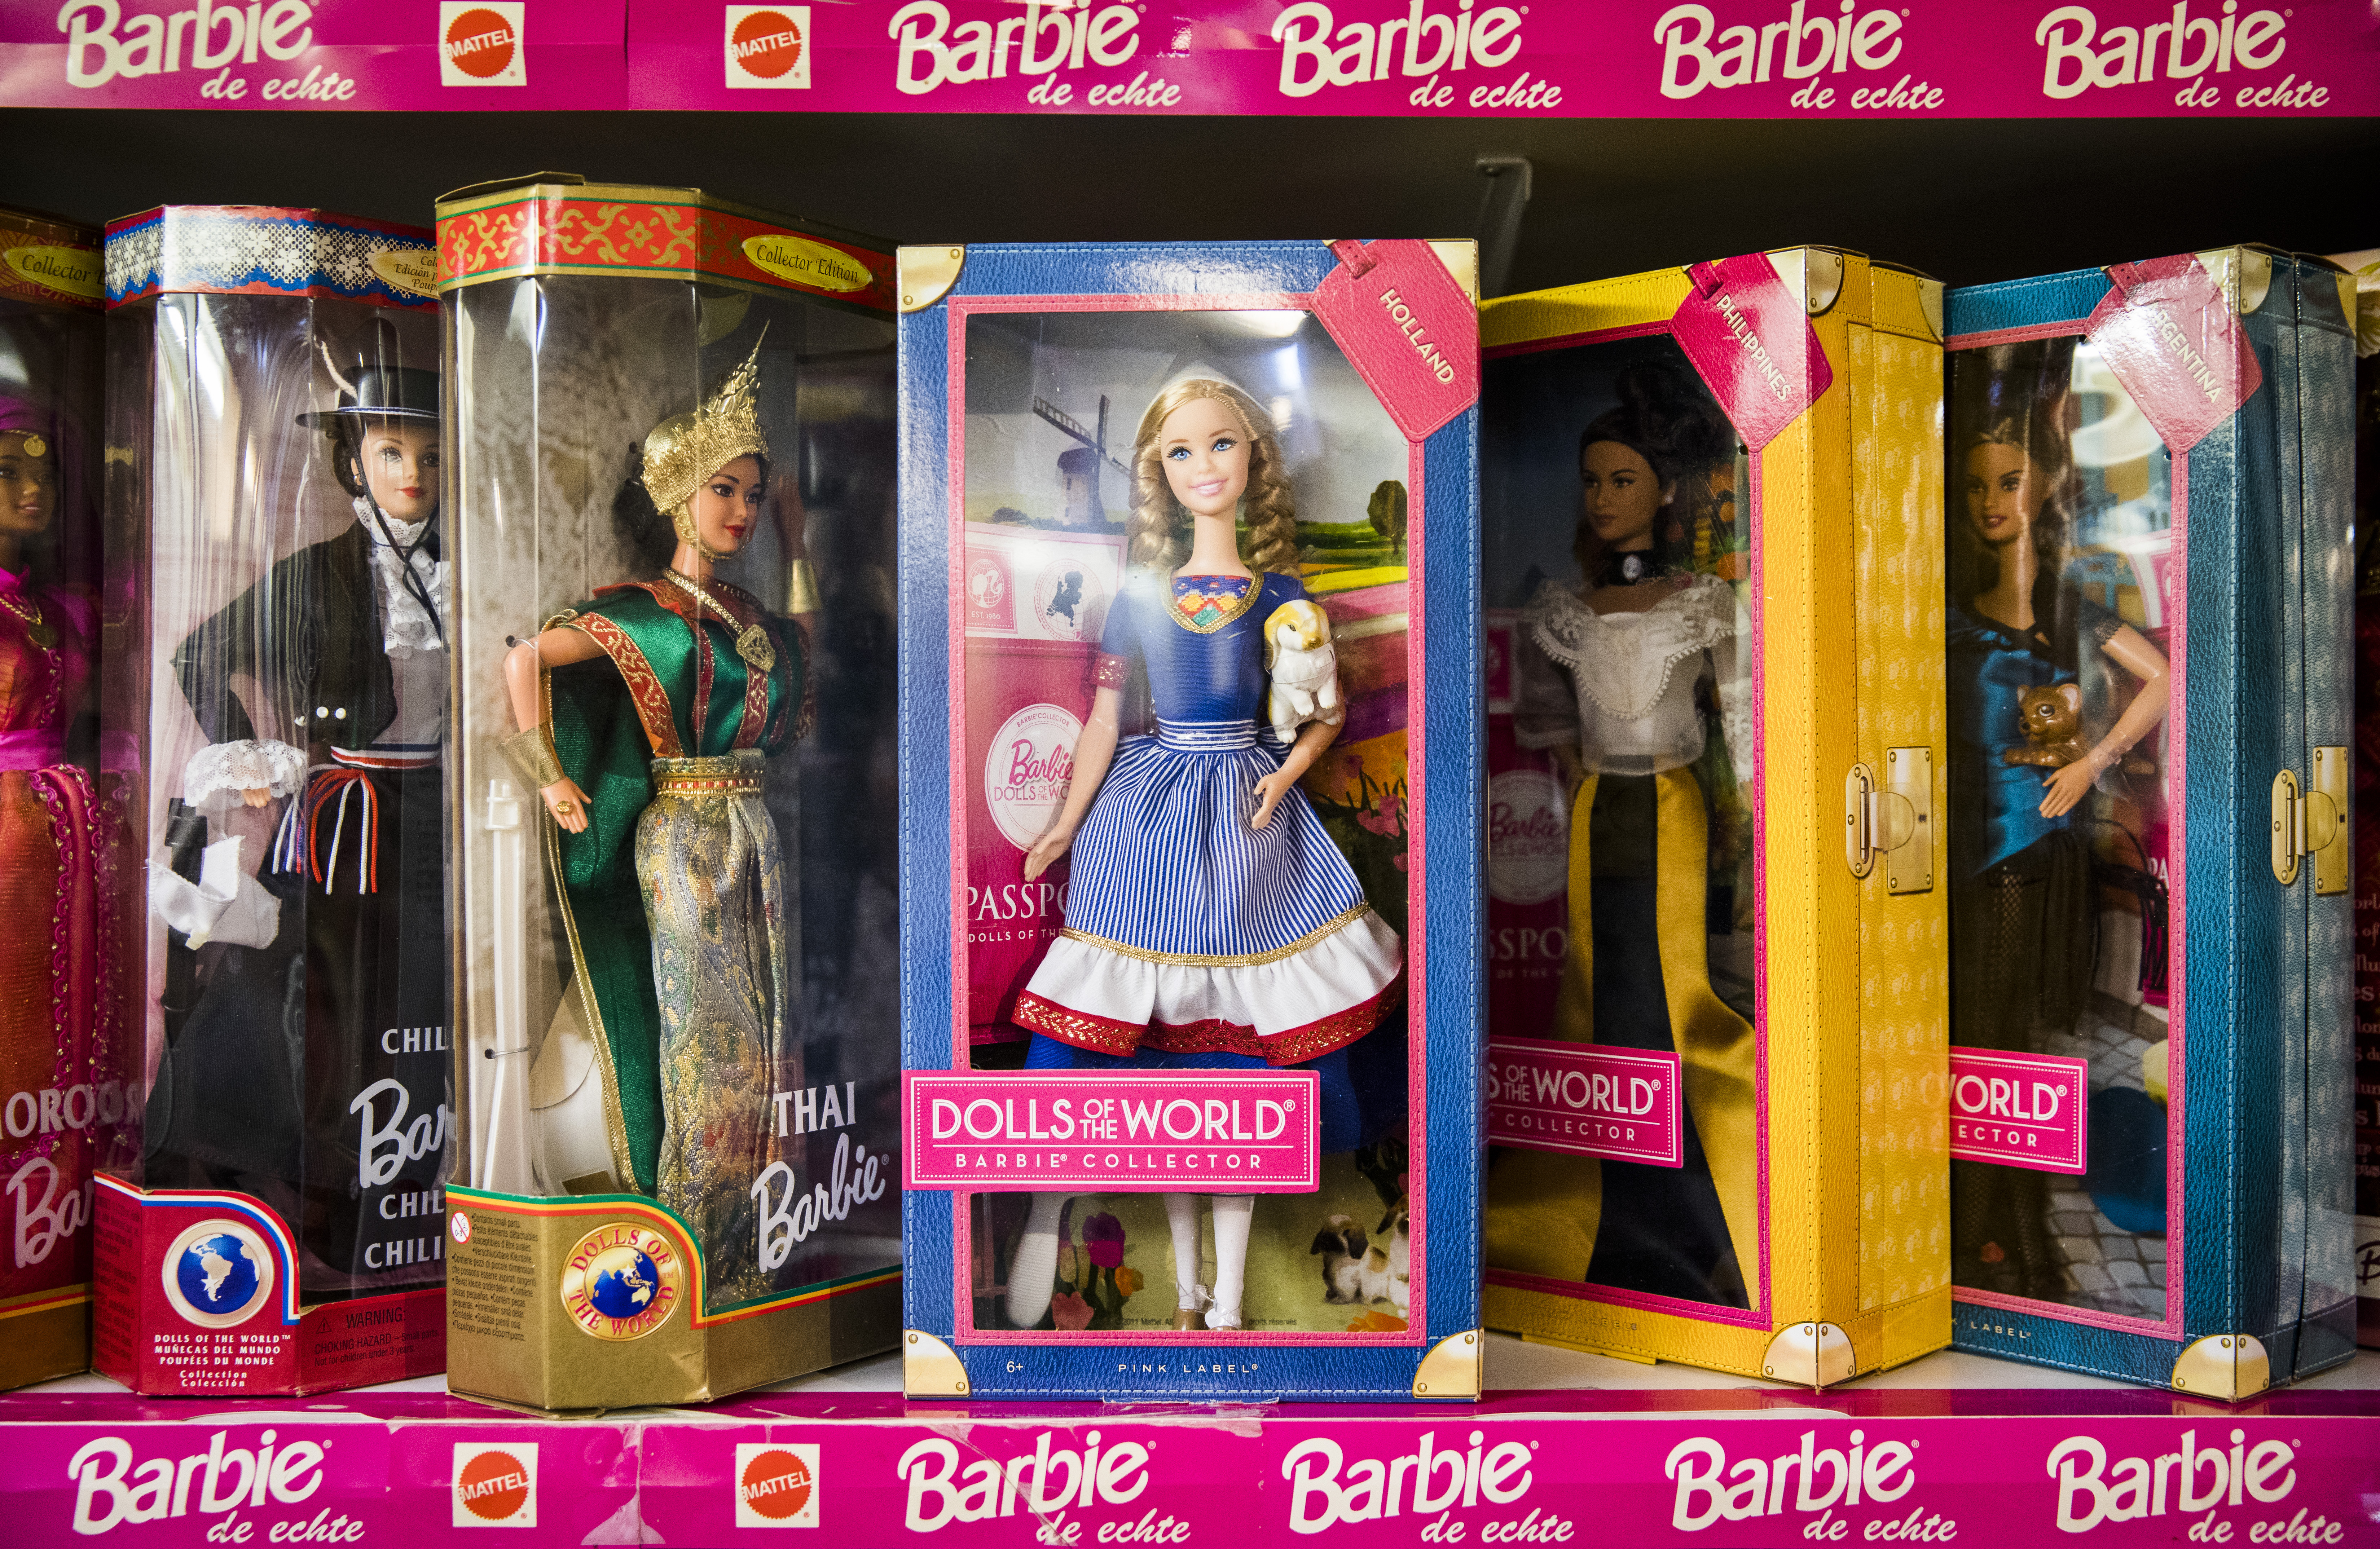 Beer Filosofisch Isoleren Barbie-maker gaat meer zwarte en andere niet-witte vrouwen eren